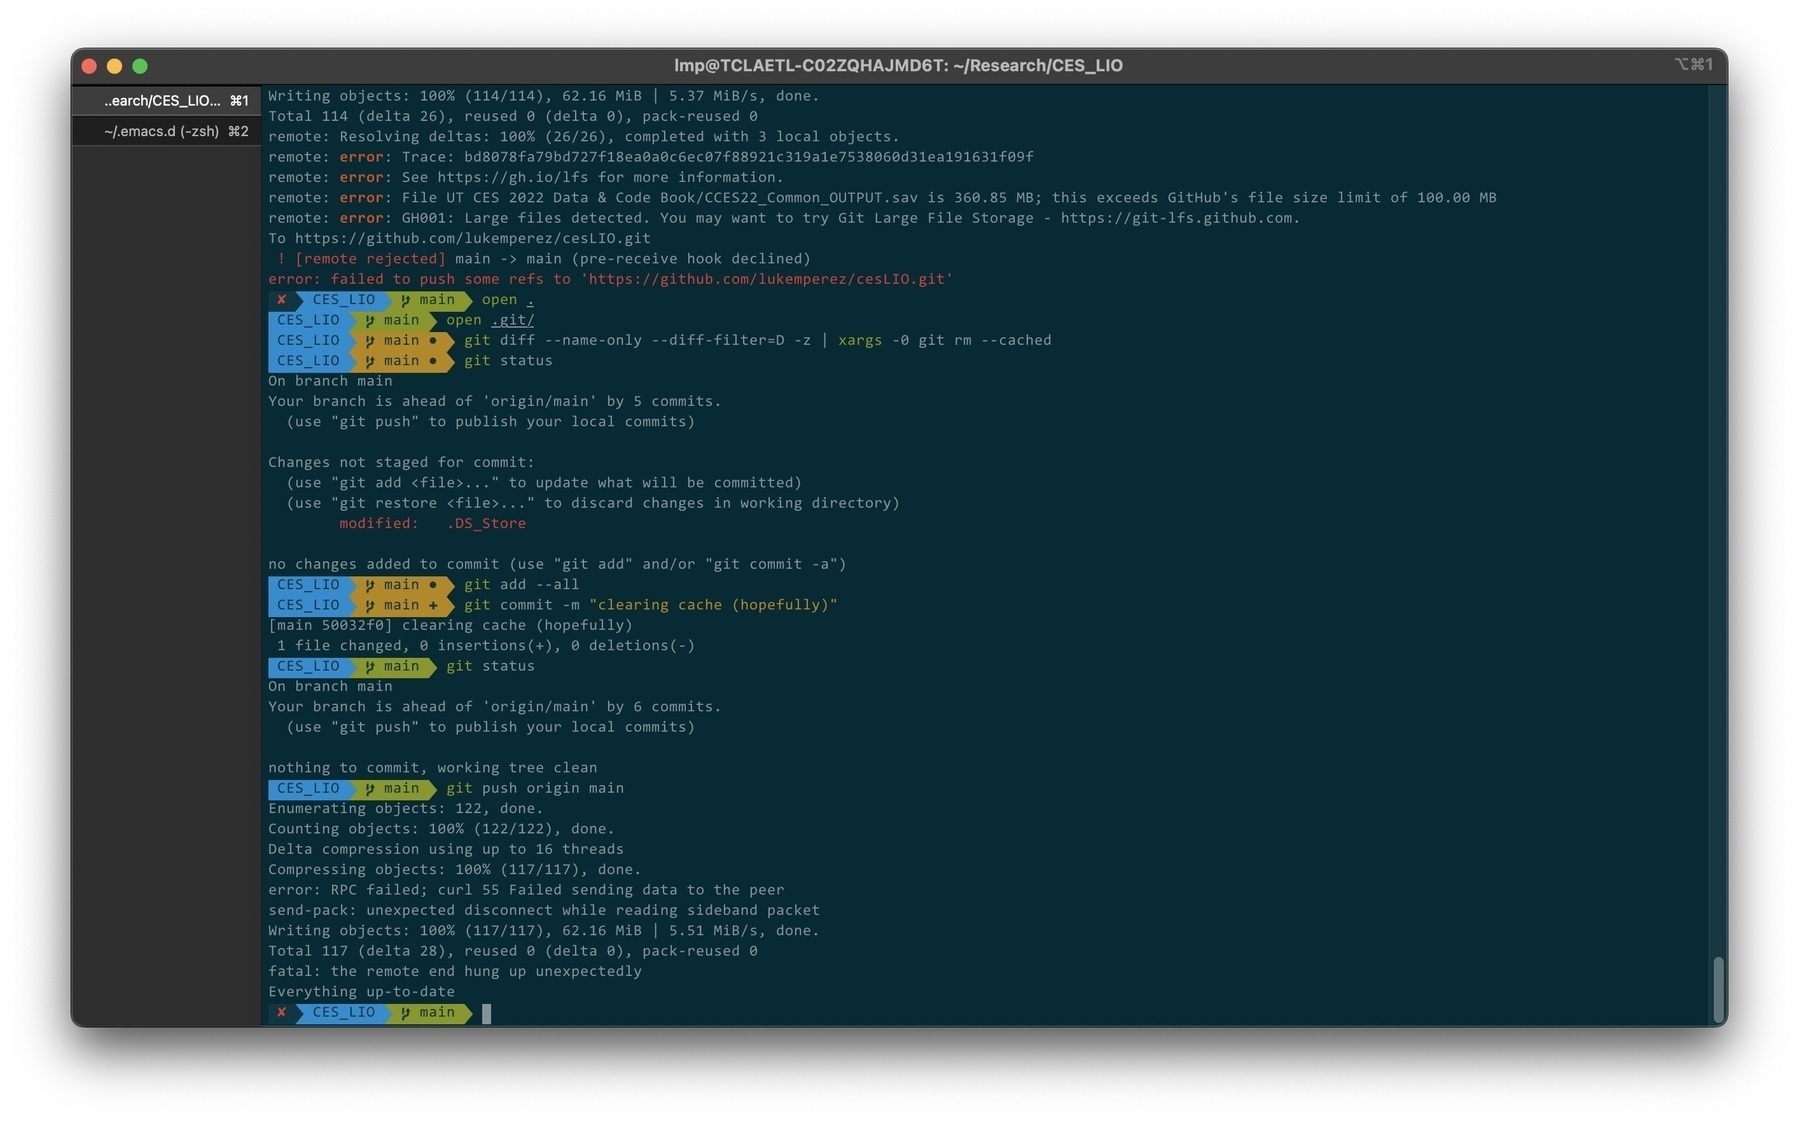 Screenshot of the terminal showing errors pushing to github